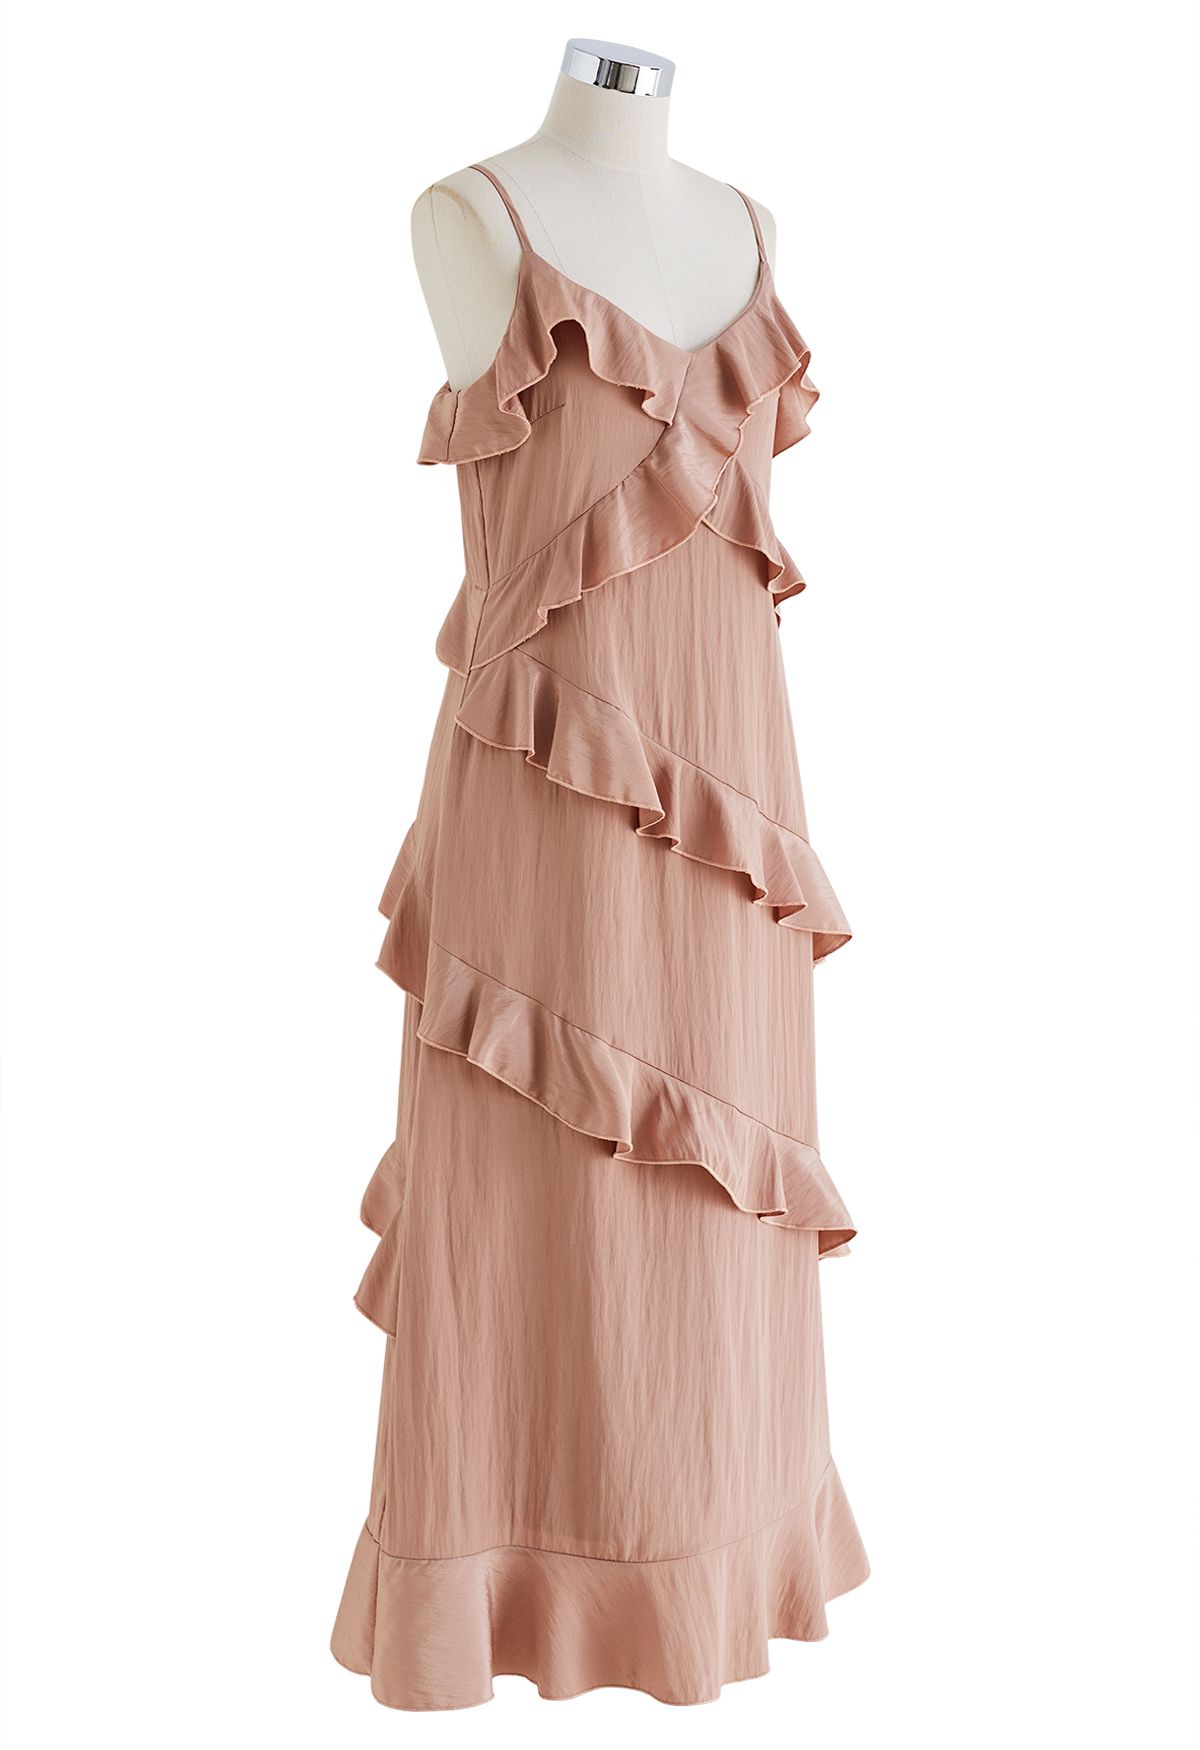 Gestuftes Cami-Kleid mit Rüschen und seitlichem Schlitz in Rosa